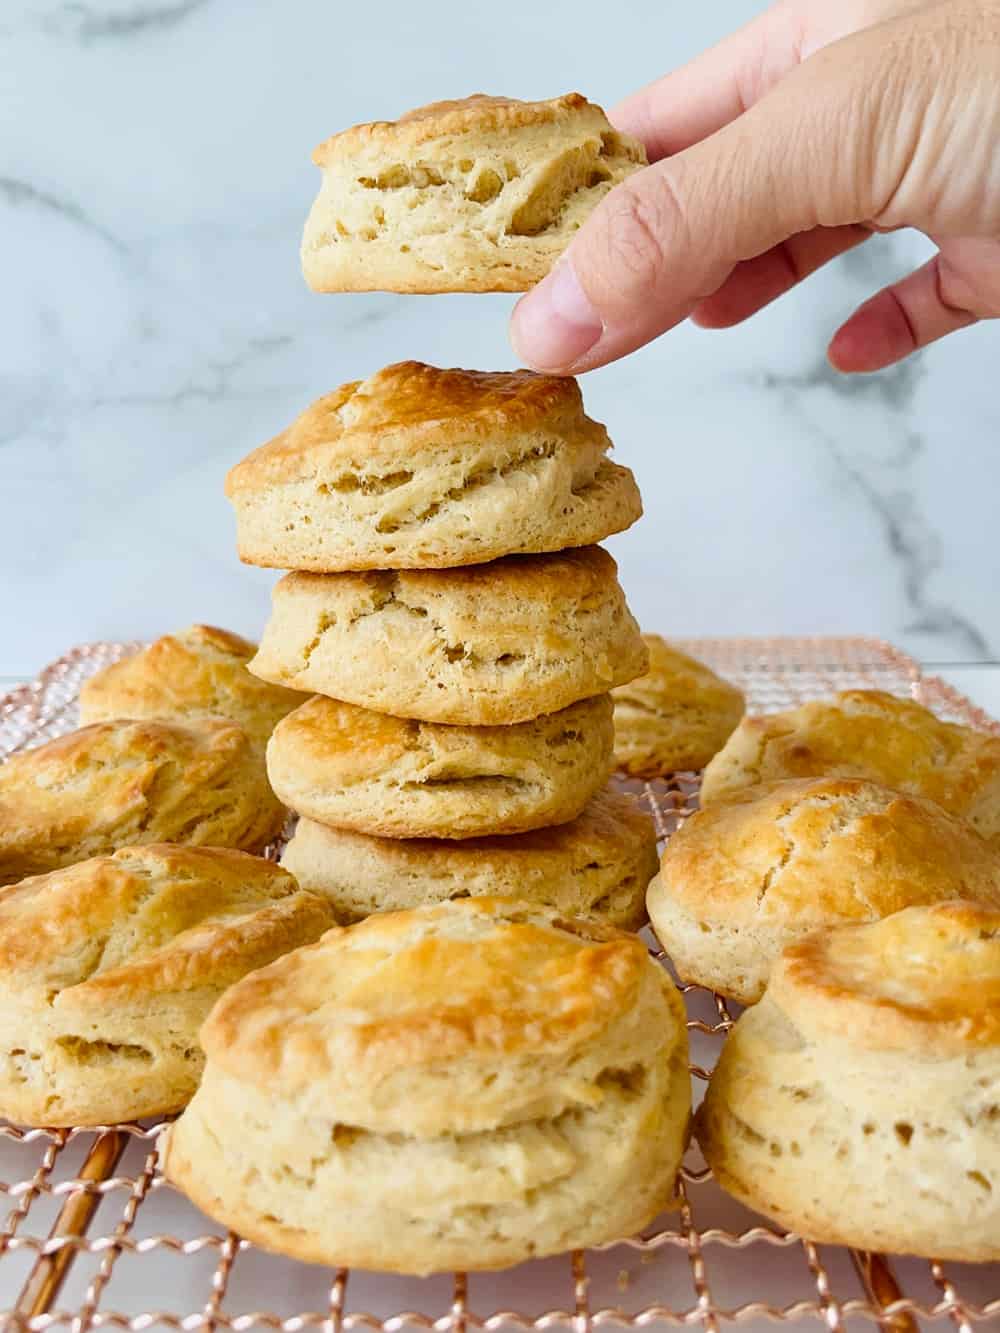 Joanna Gaines Biscuit Recipe